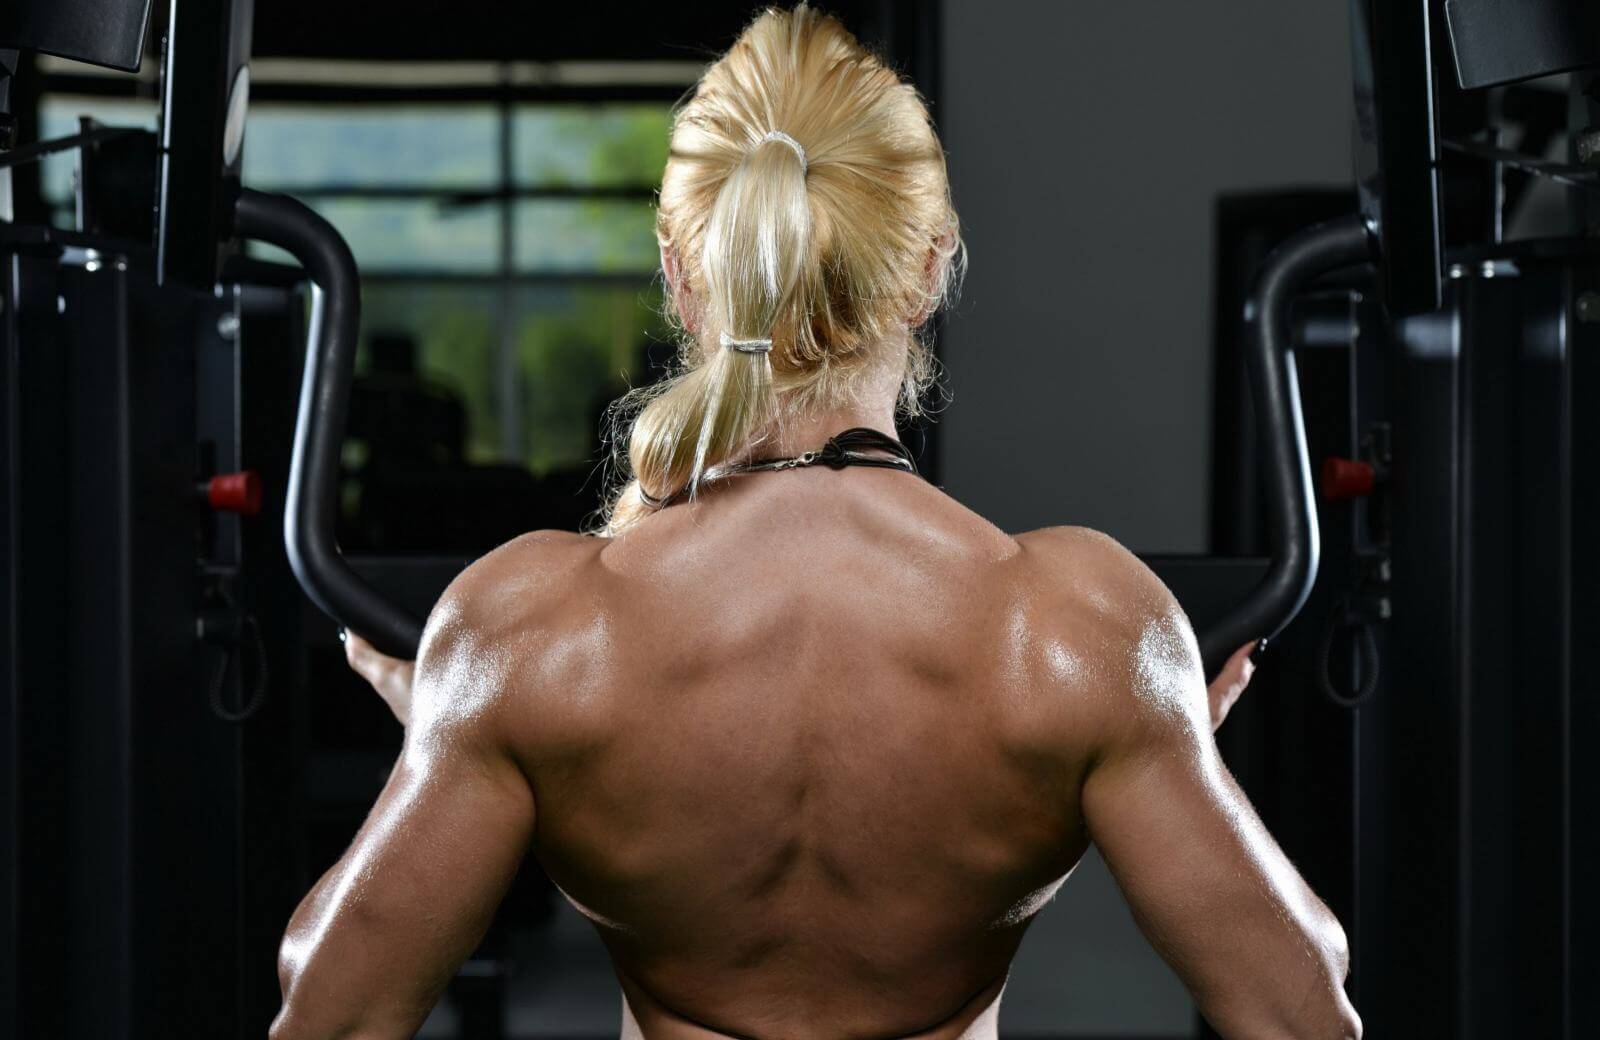 Спортсменки часто накачивают трапециевидные мышцы, но это визуально укорачивает шею и делает силуэт слишком массивным